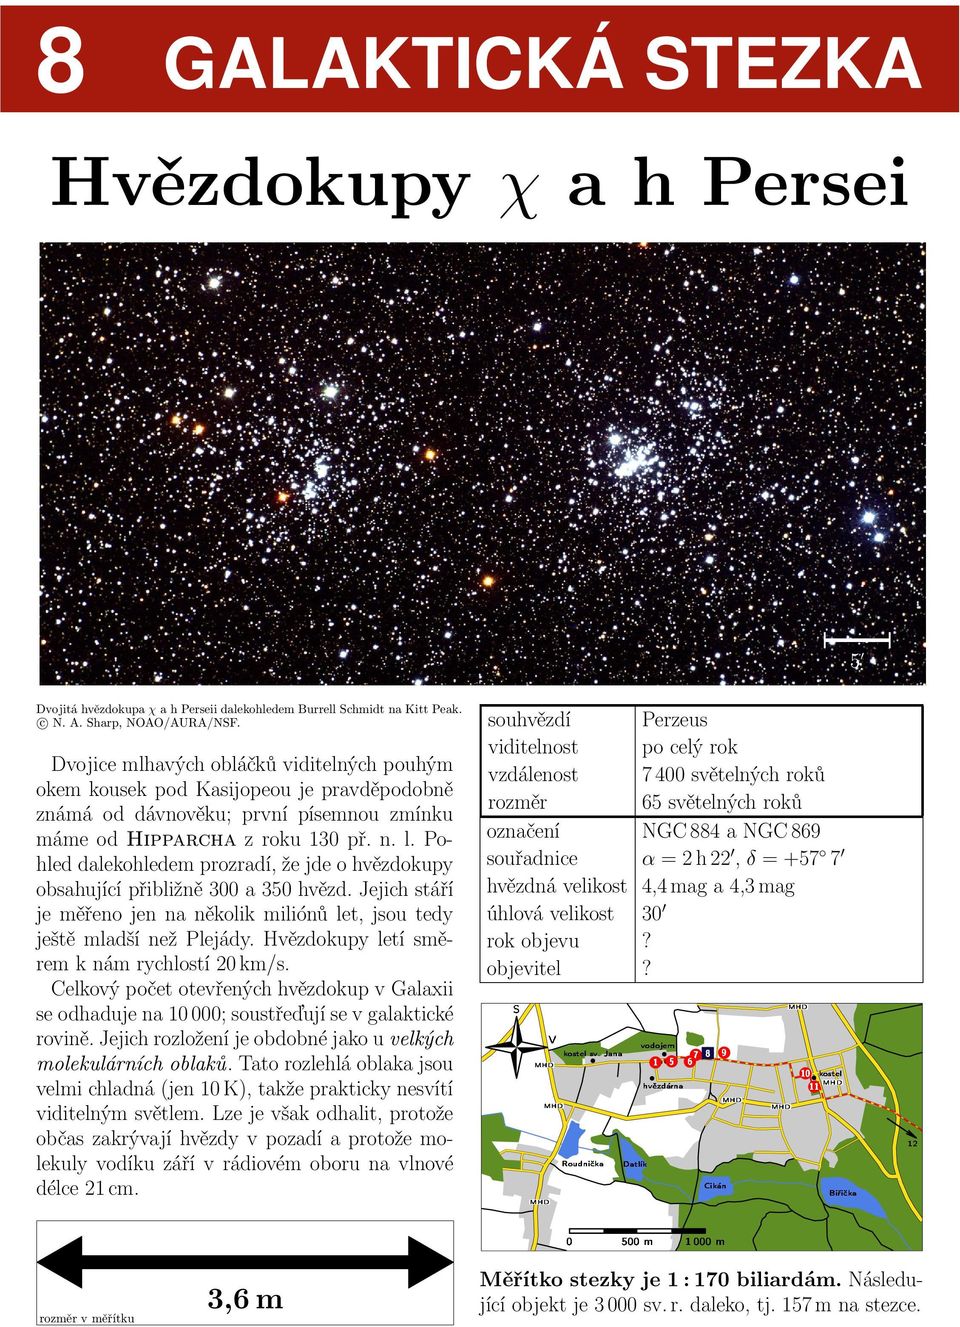 Pohled dalekohledem prozradí, že jde o hvězdokupy obsahující přibližně 3 a 35 hvězd. Jejich stáří je měřeno jen na několik miliónů let, jsou tedy ještě mladší než Plejády.